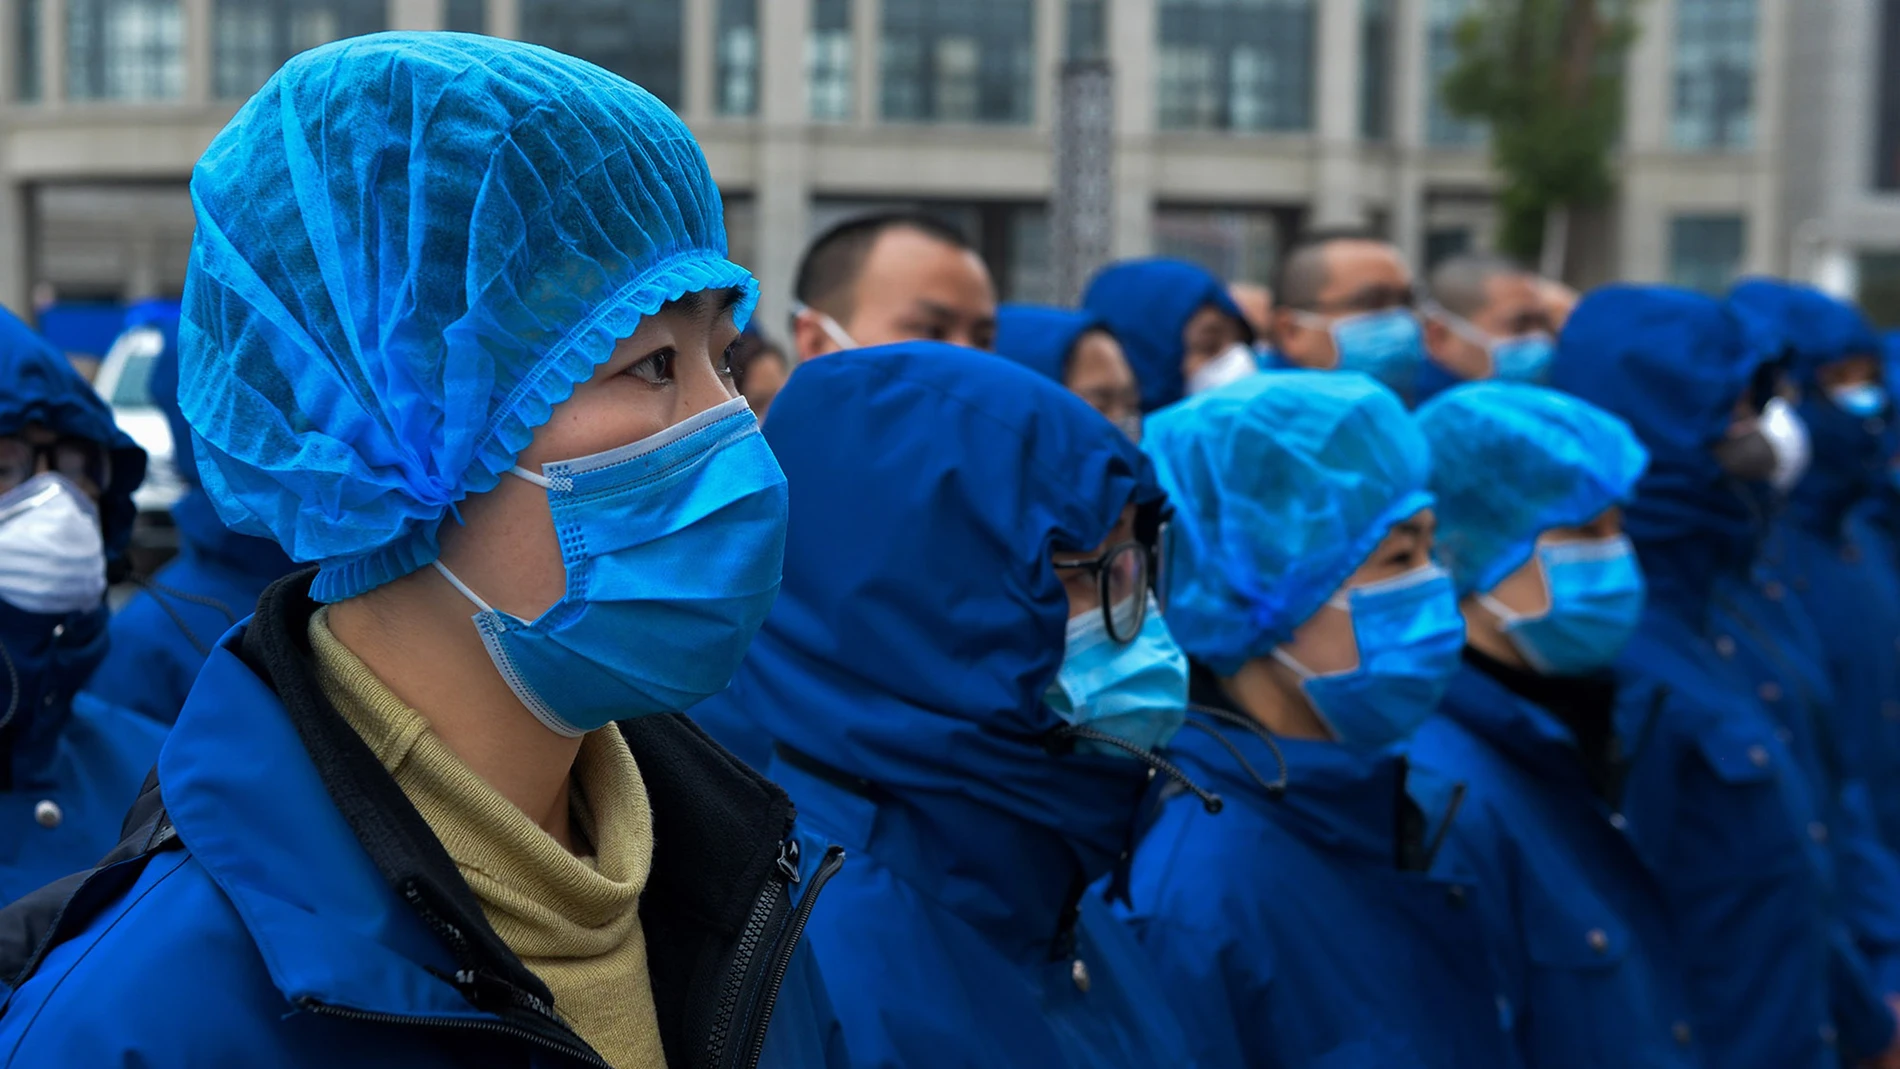 Coronavirus outbreak in China